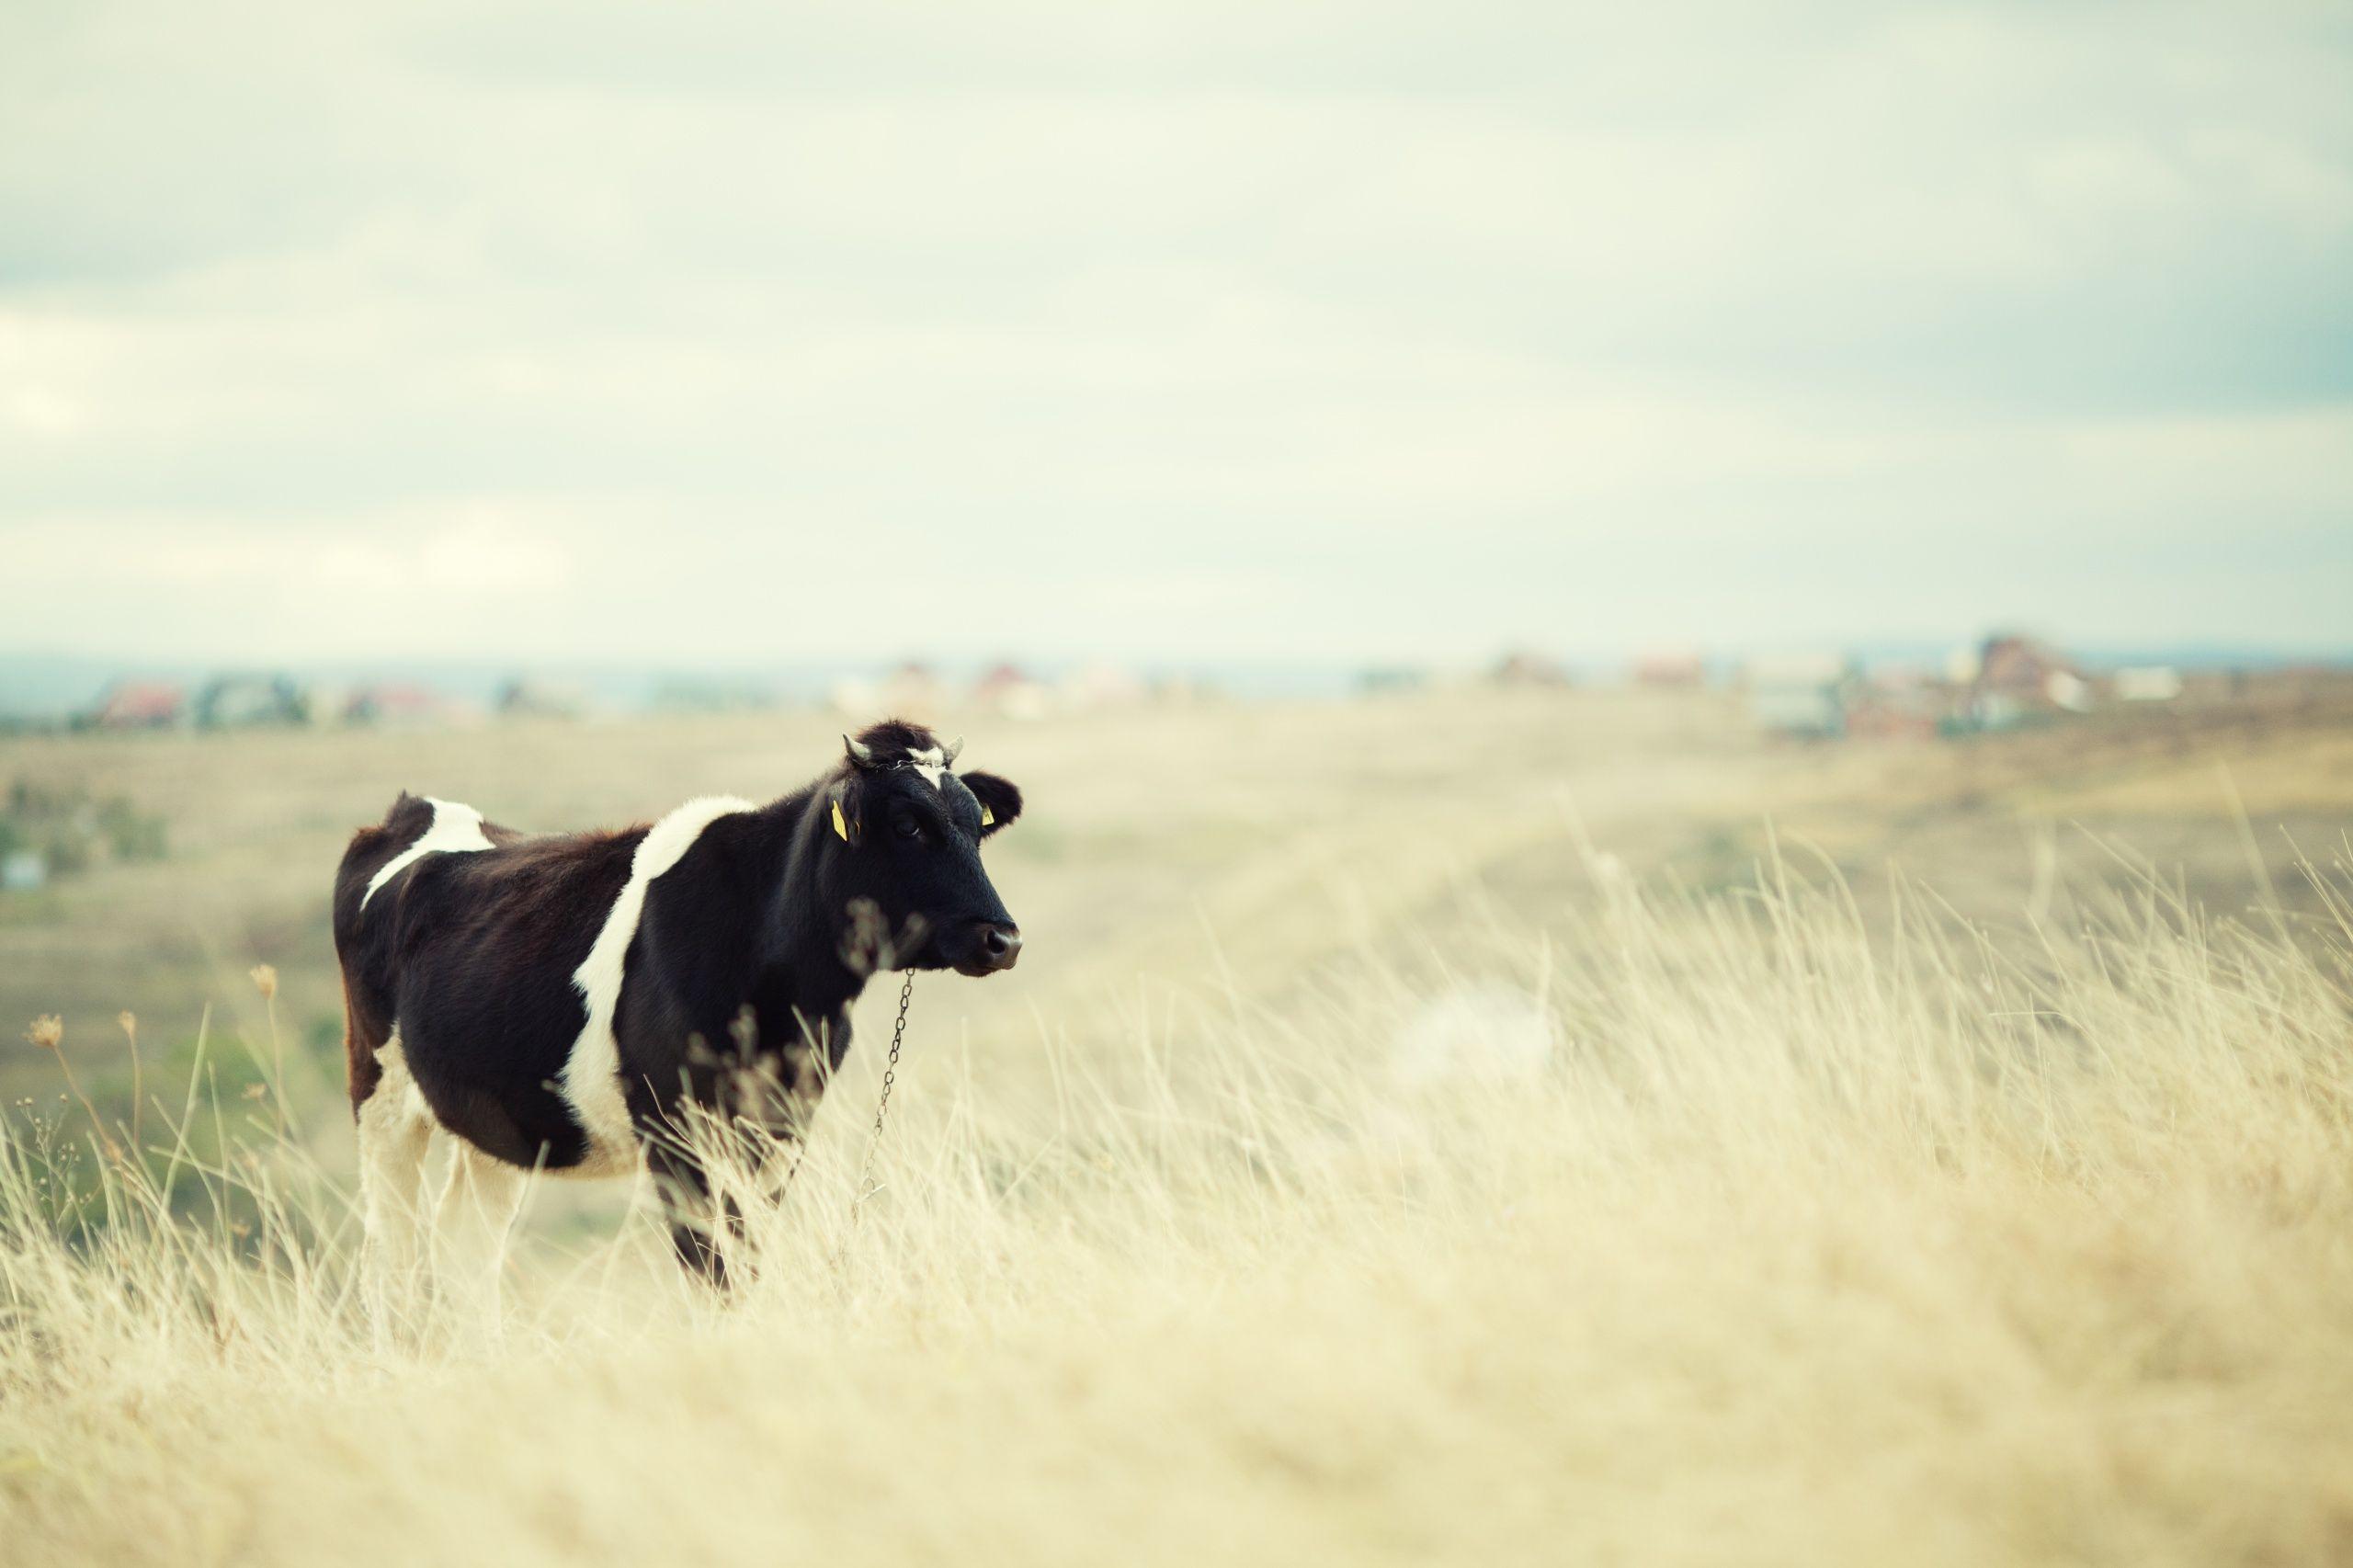 Cow on a field wallpaper. Cow on a field